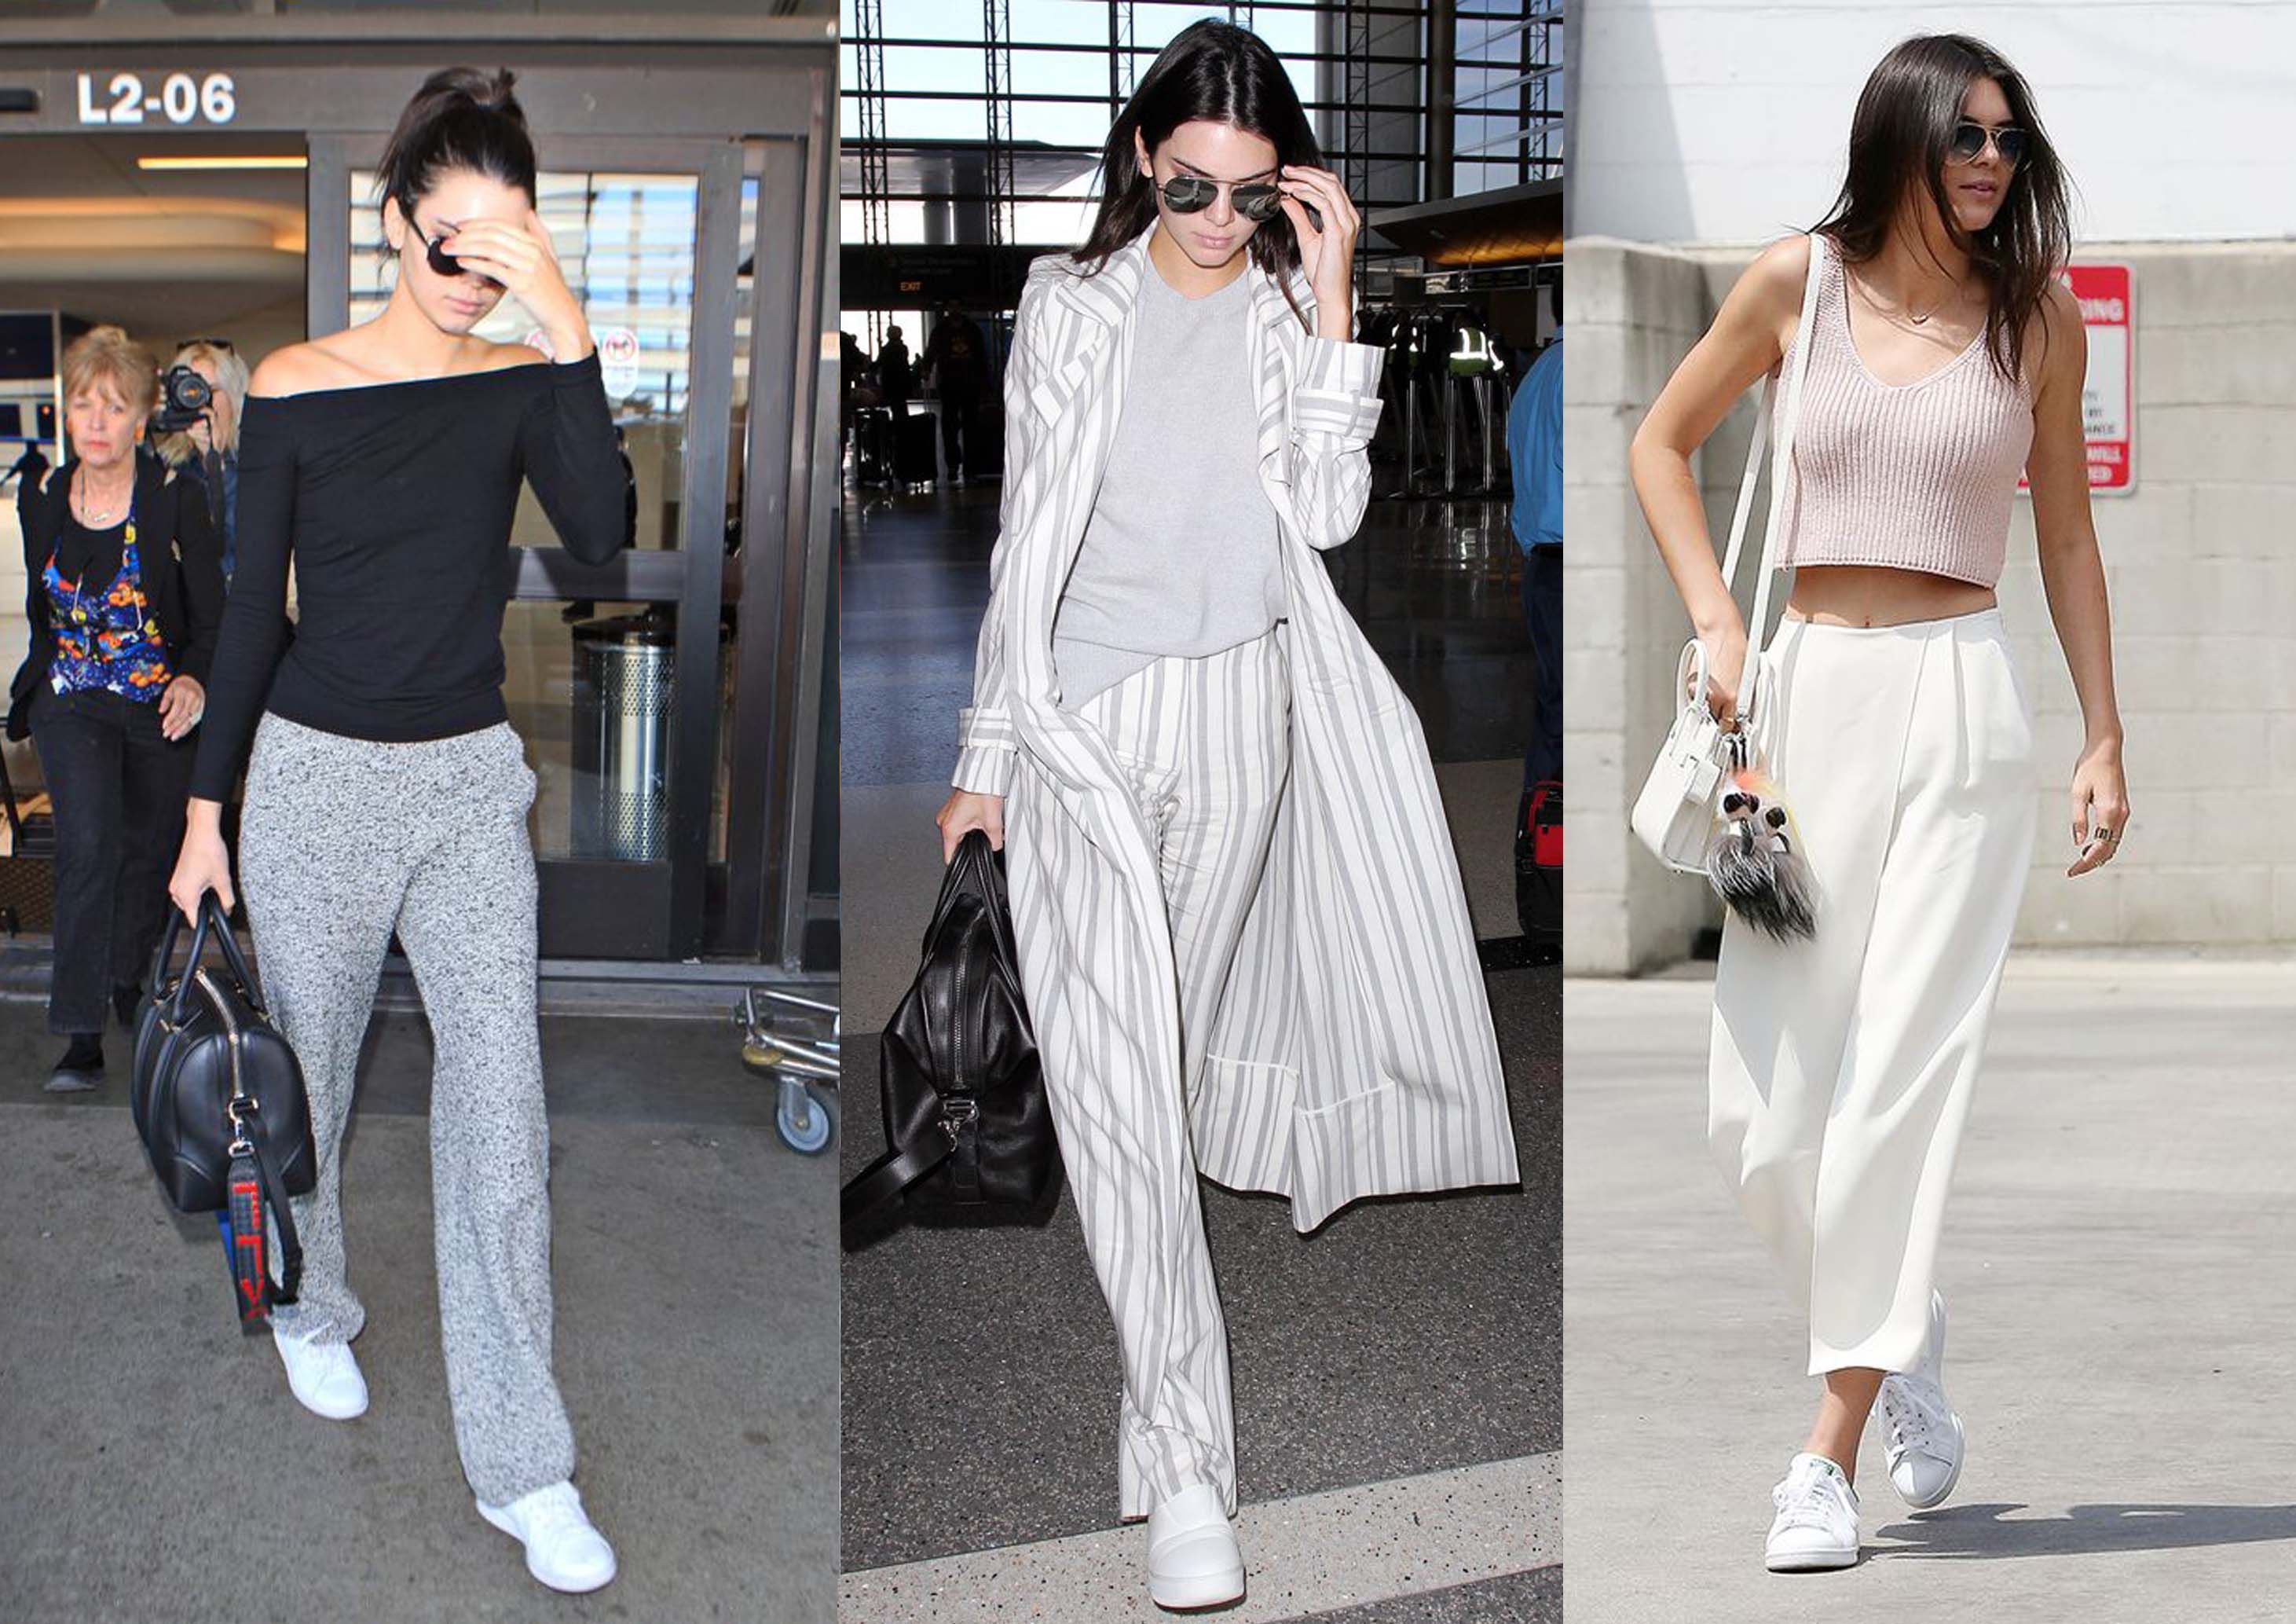 Mix N Match Sneakers a la Kendall Jenner Yang Bisa Kamu Contek